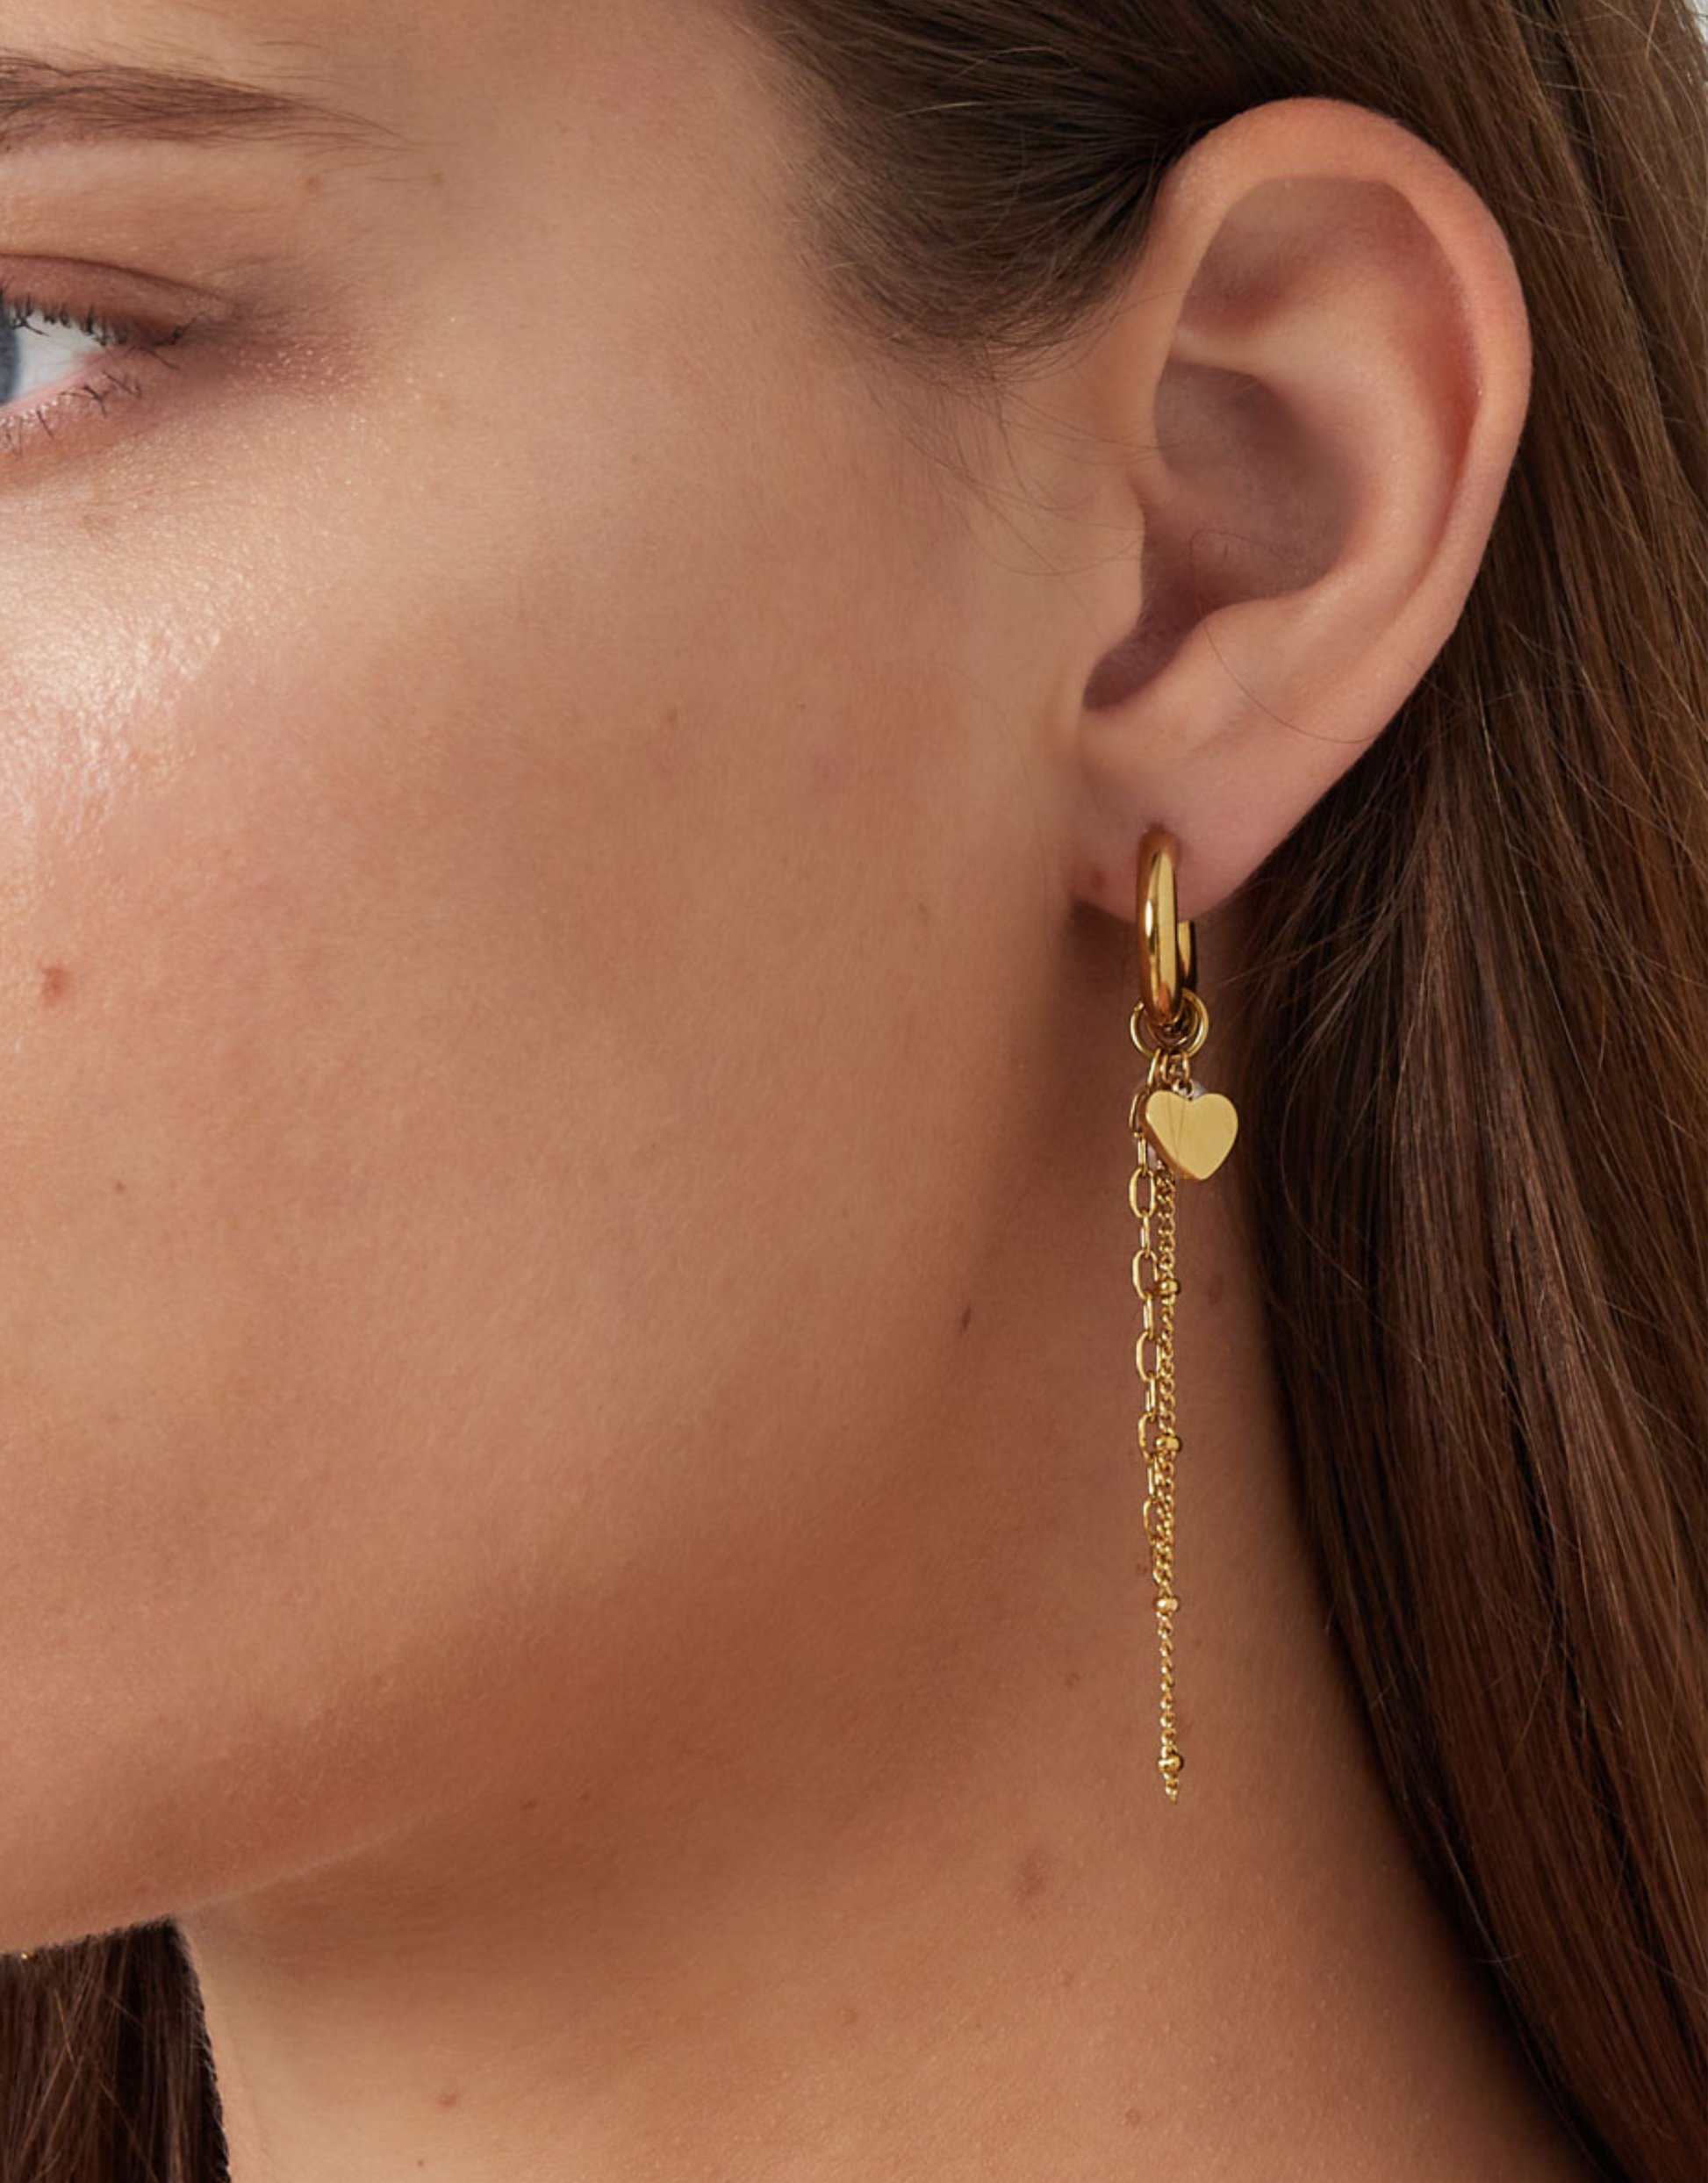 Vores Yaniah øreringe er elegante og med de flotteste vedhæng.   Disse øreringe er til dig, der elsker, at spice dit look up med unikke smykker.   Materiale: Overfladebehandlet rustfri stål, perler, forgyldt med 14 karat. 100% nikkelfri. Størrelse: 1.6cm + 7.1 cm